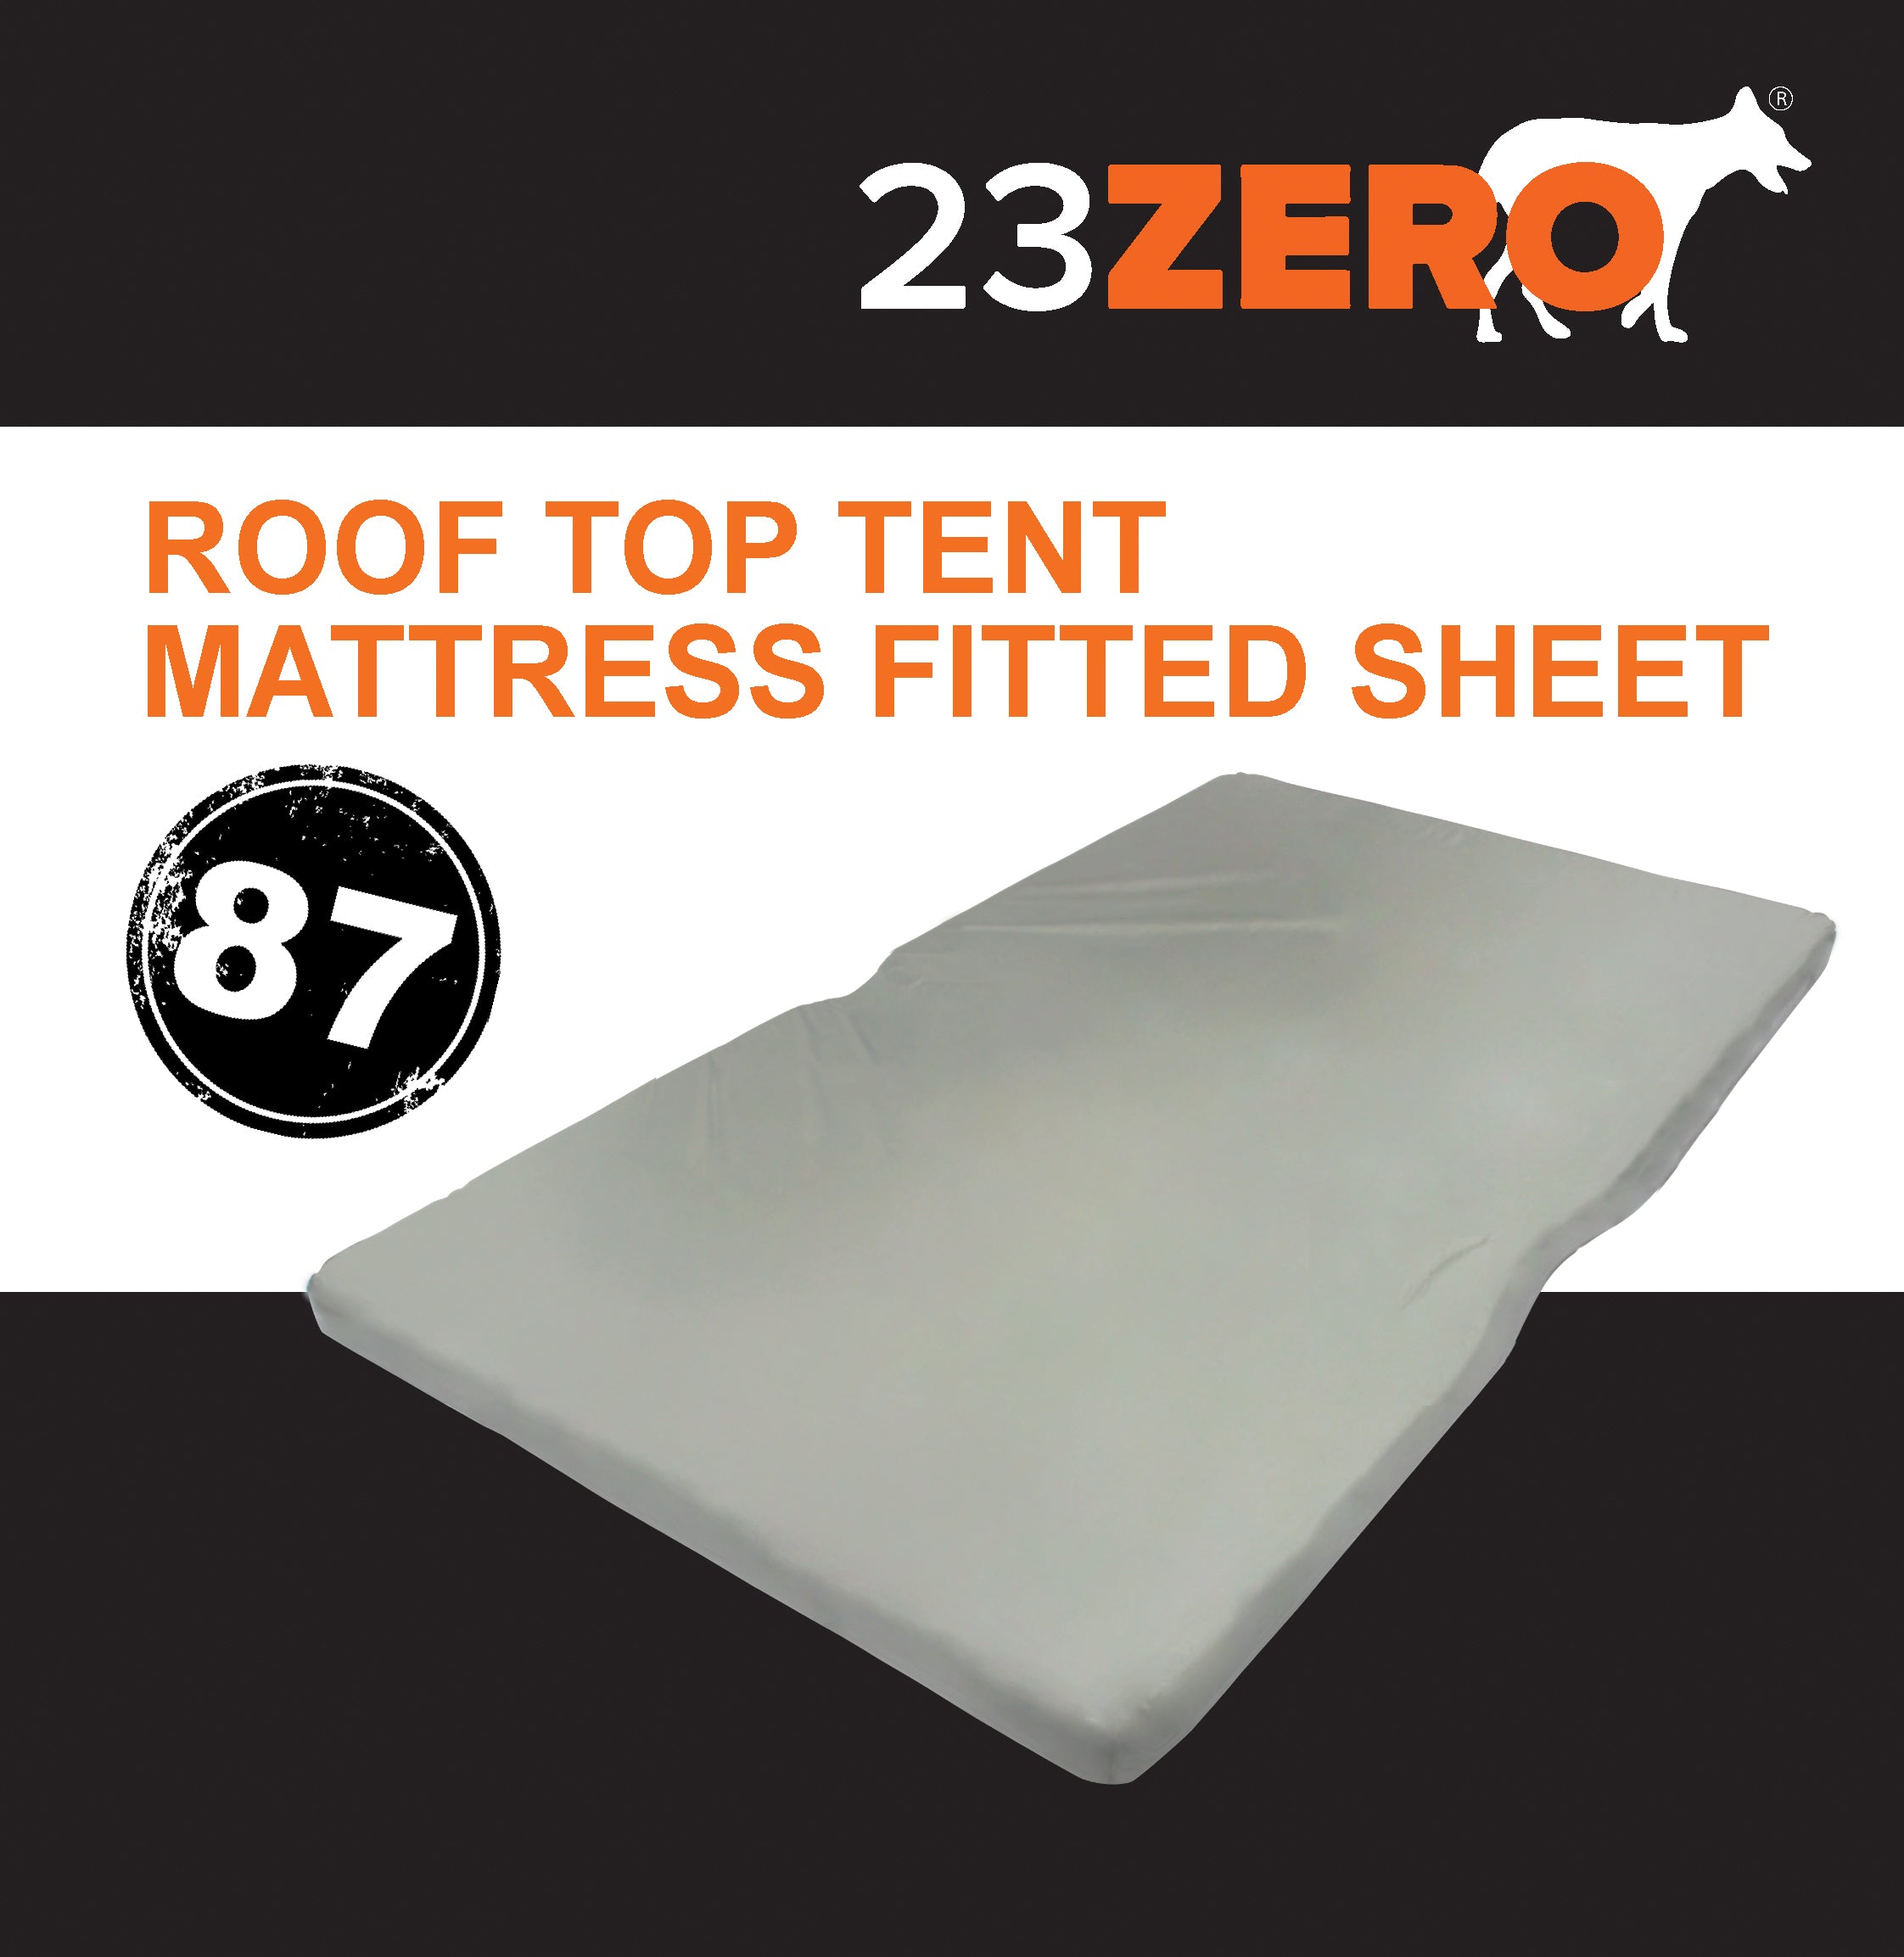 23Zero Roof Top Tent Mattress Fitted Sheet 87"